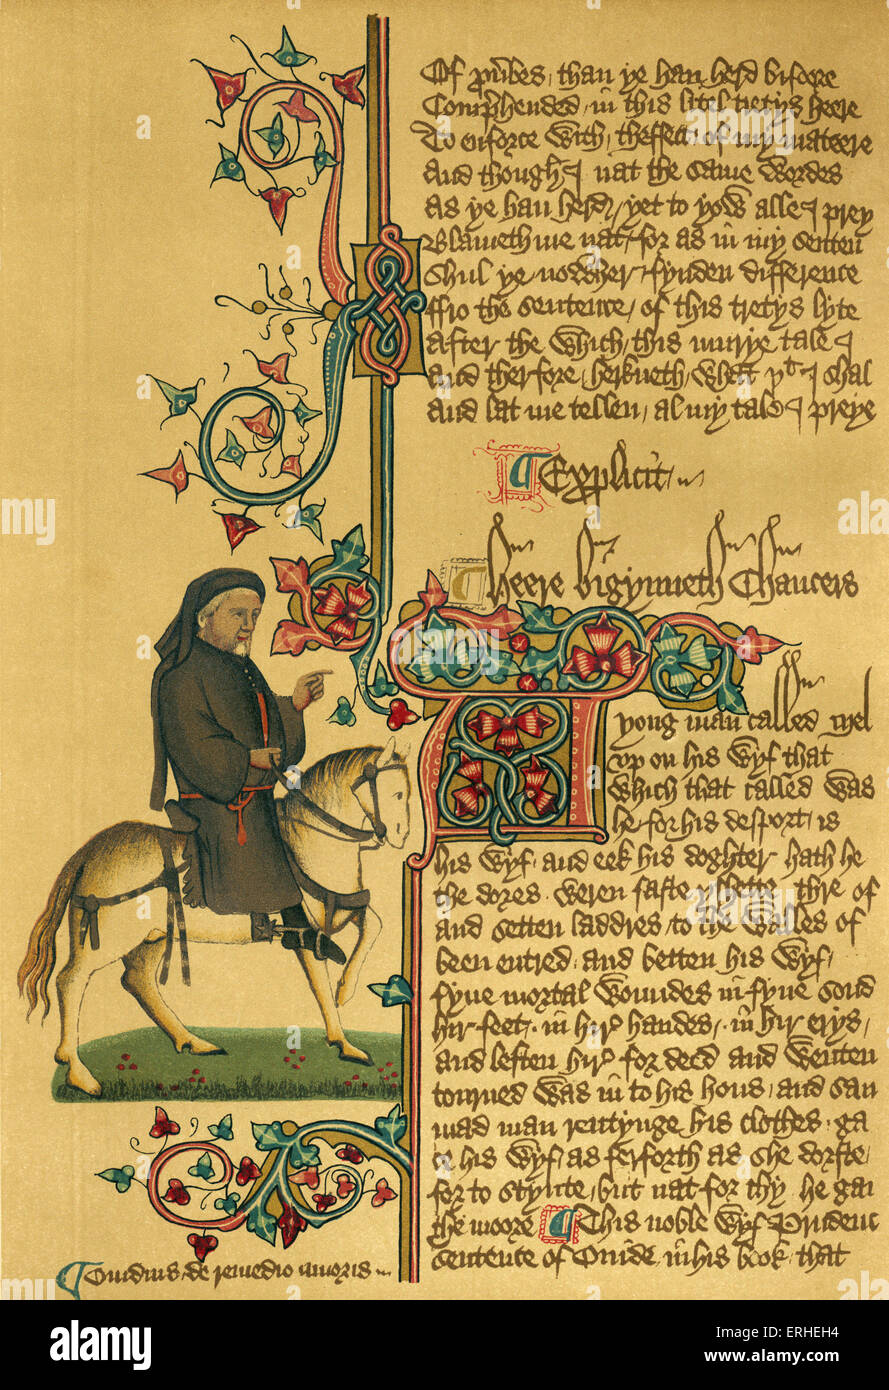 Geoffrey Chaucer - à cheval sur manuscrit c 1343-1400. Chaucer d'Ellesmere. Auteur anglais, poète et philosophe : c 1343 - Banque D'Images